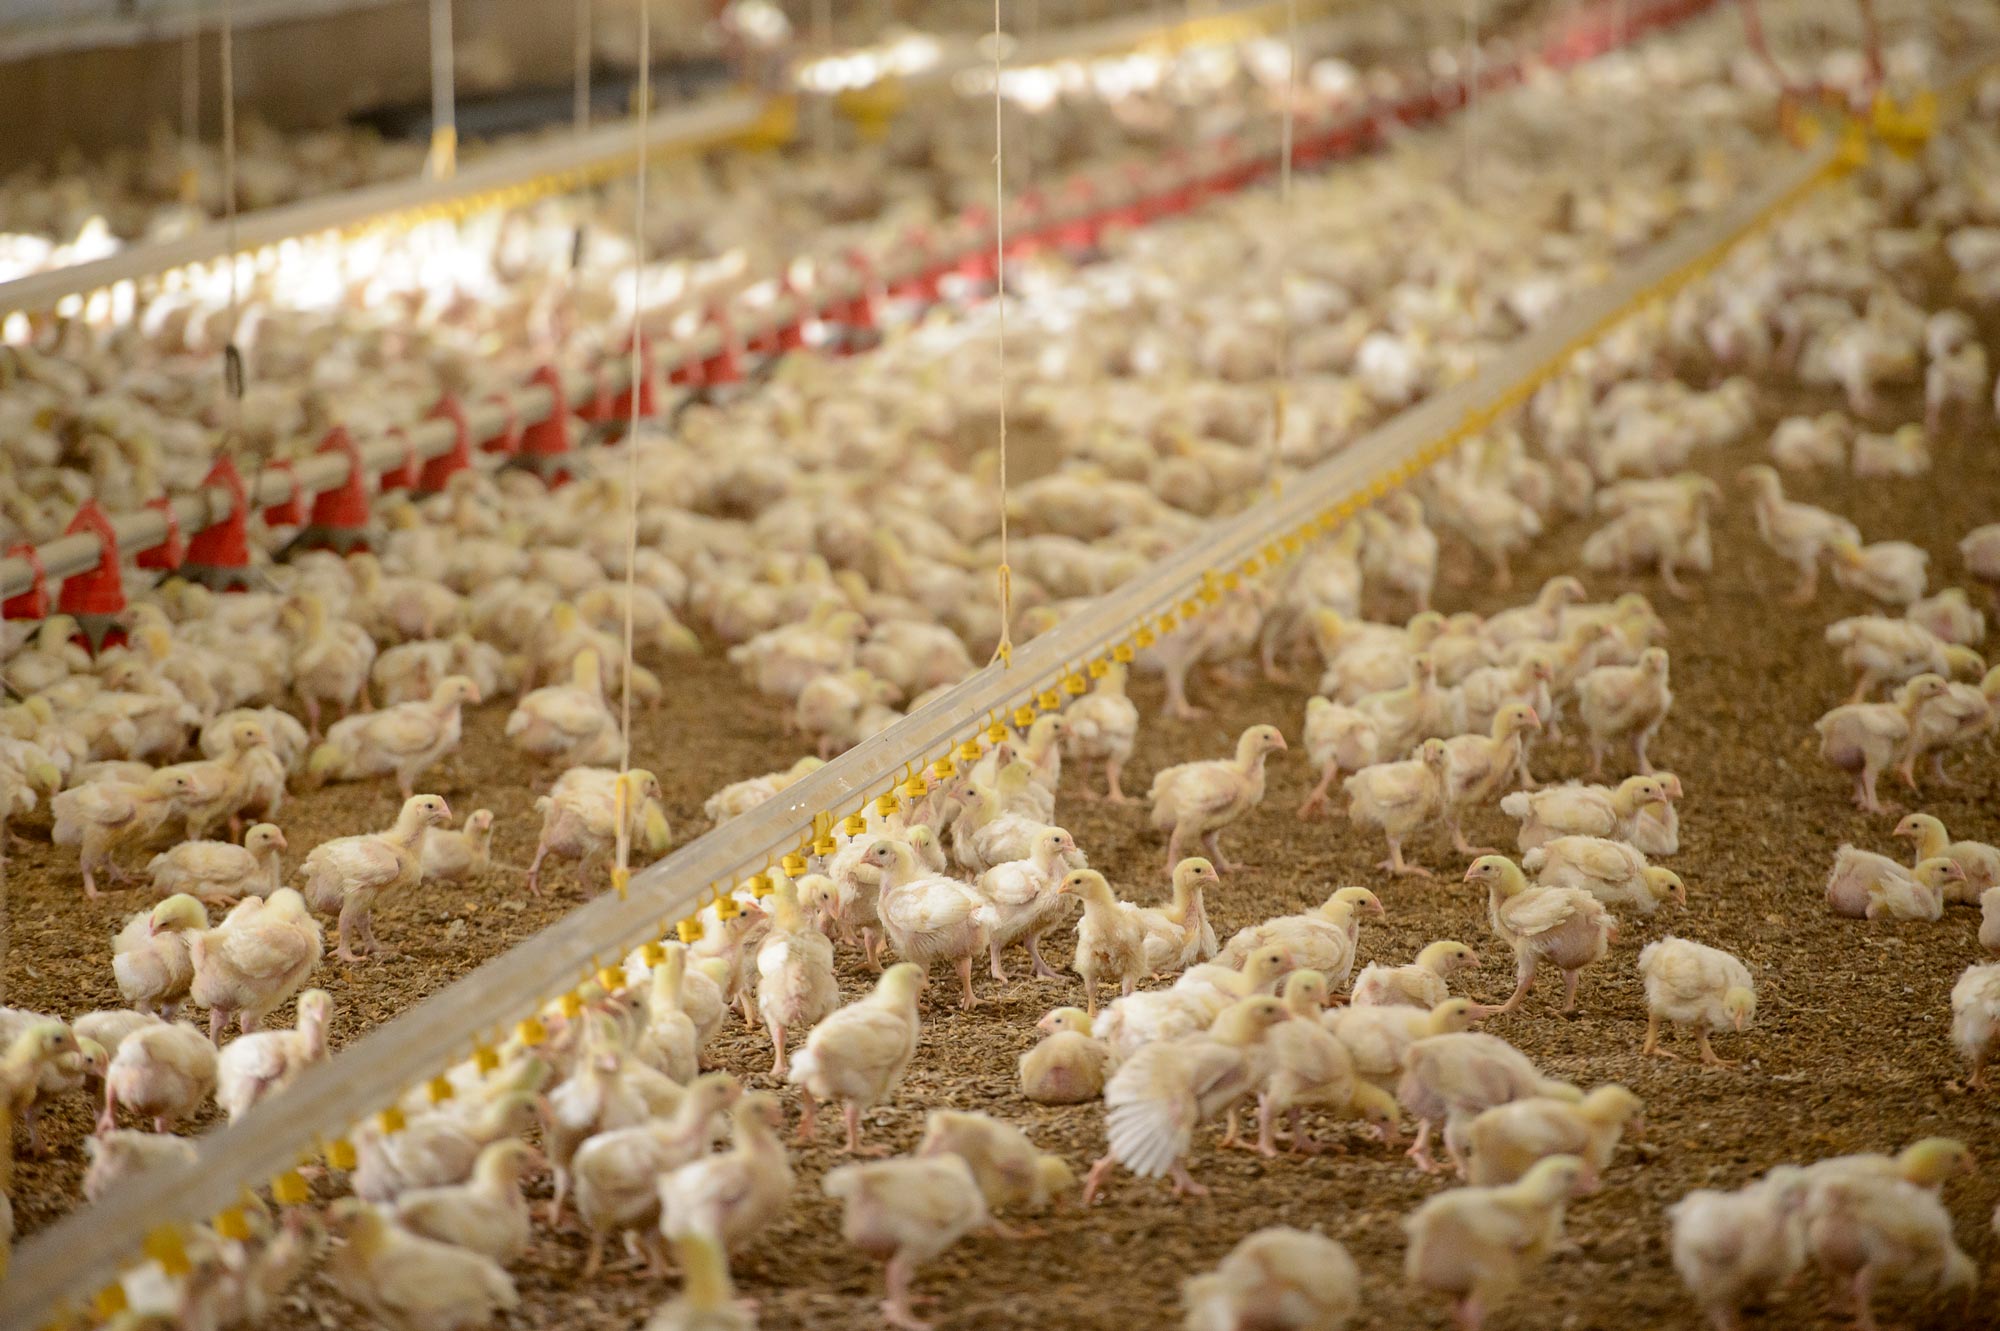 Las exportaciones de aves de corral de Estados Unidos totalizaron 3,628 millones de dólares de enero a agosto de 2022. U.S. poultry exports totaled $3.628 billion from January through August 2022.